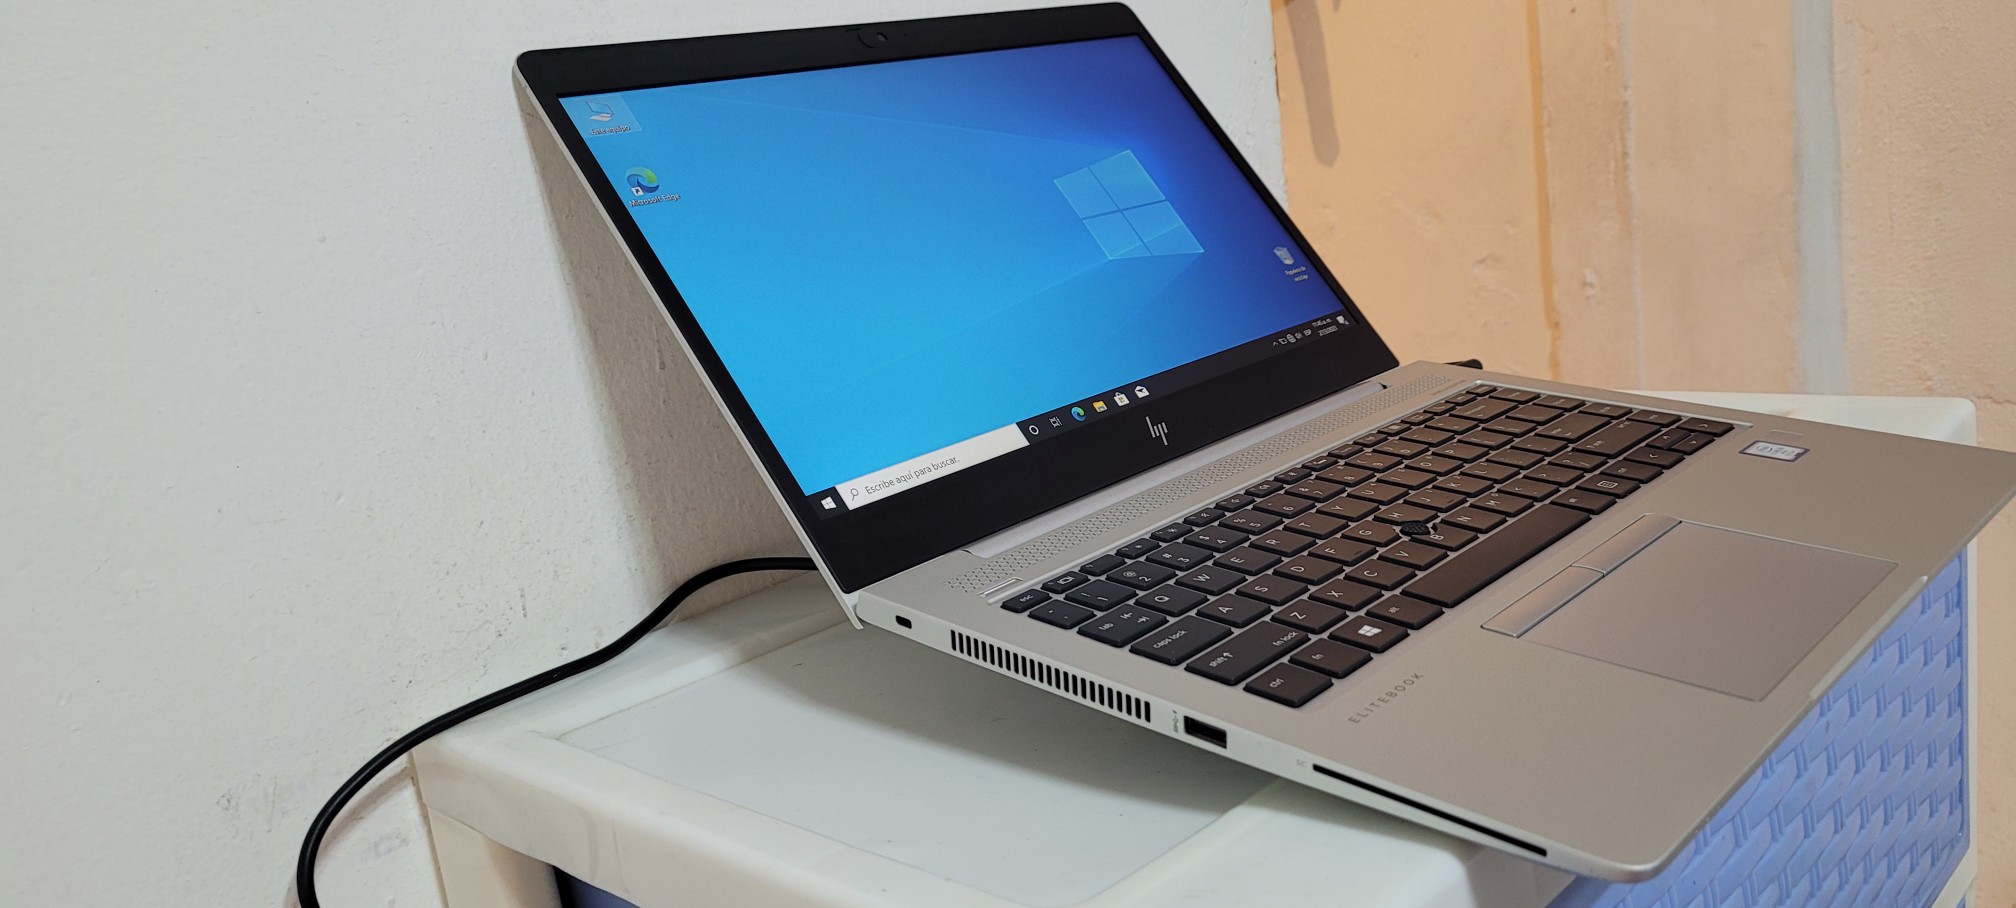 computadoras y laptops - Laptop hp G3 14 Pulg Core i5 7ma Gen Ram 8gb ddr4 Disco 256gb Wifi Bluetoth 1